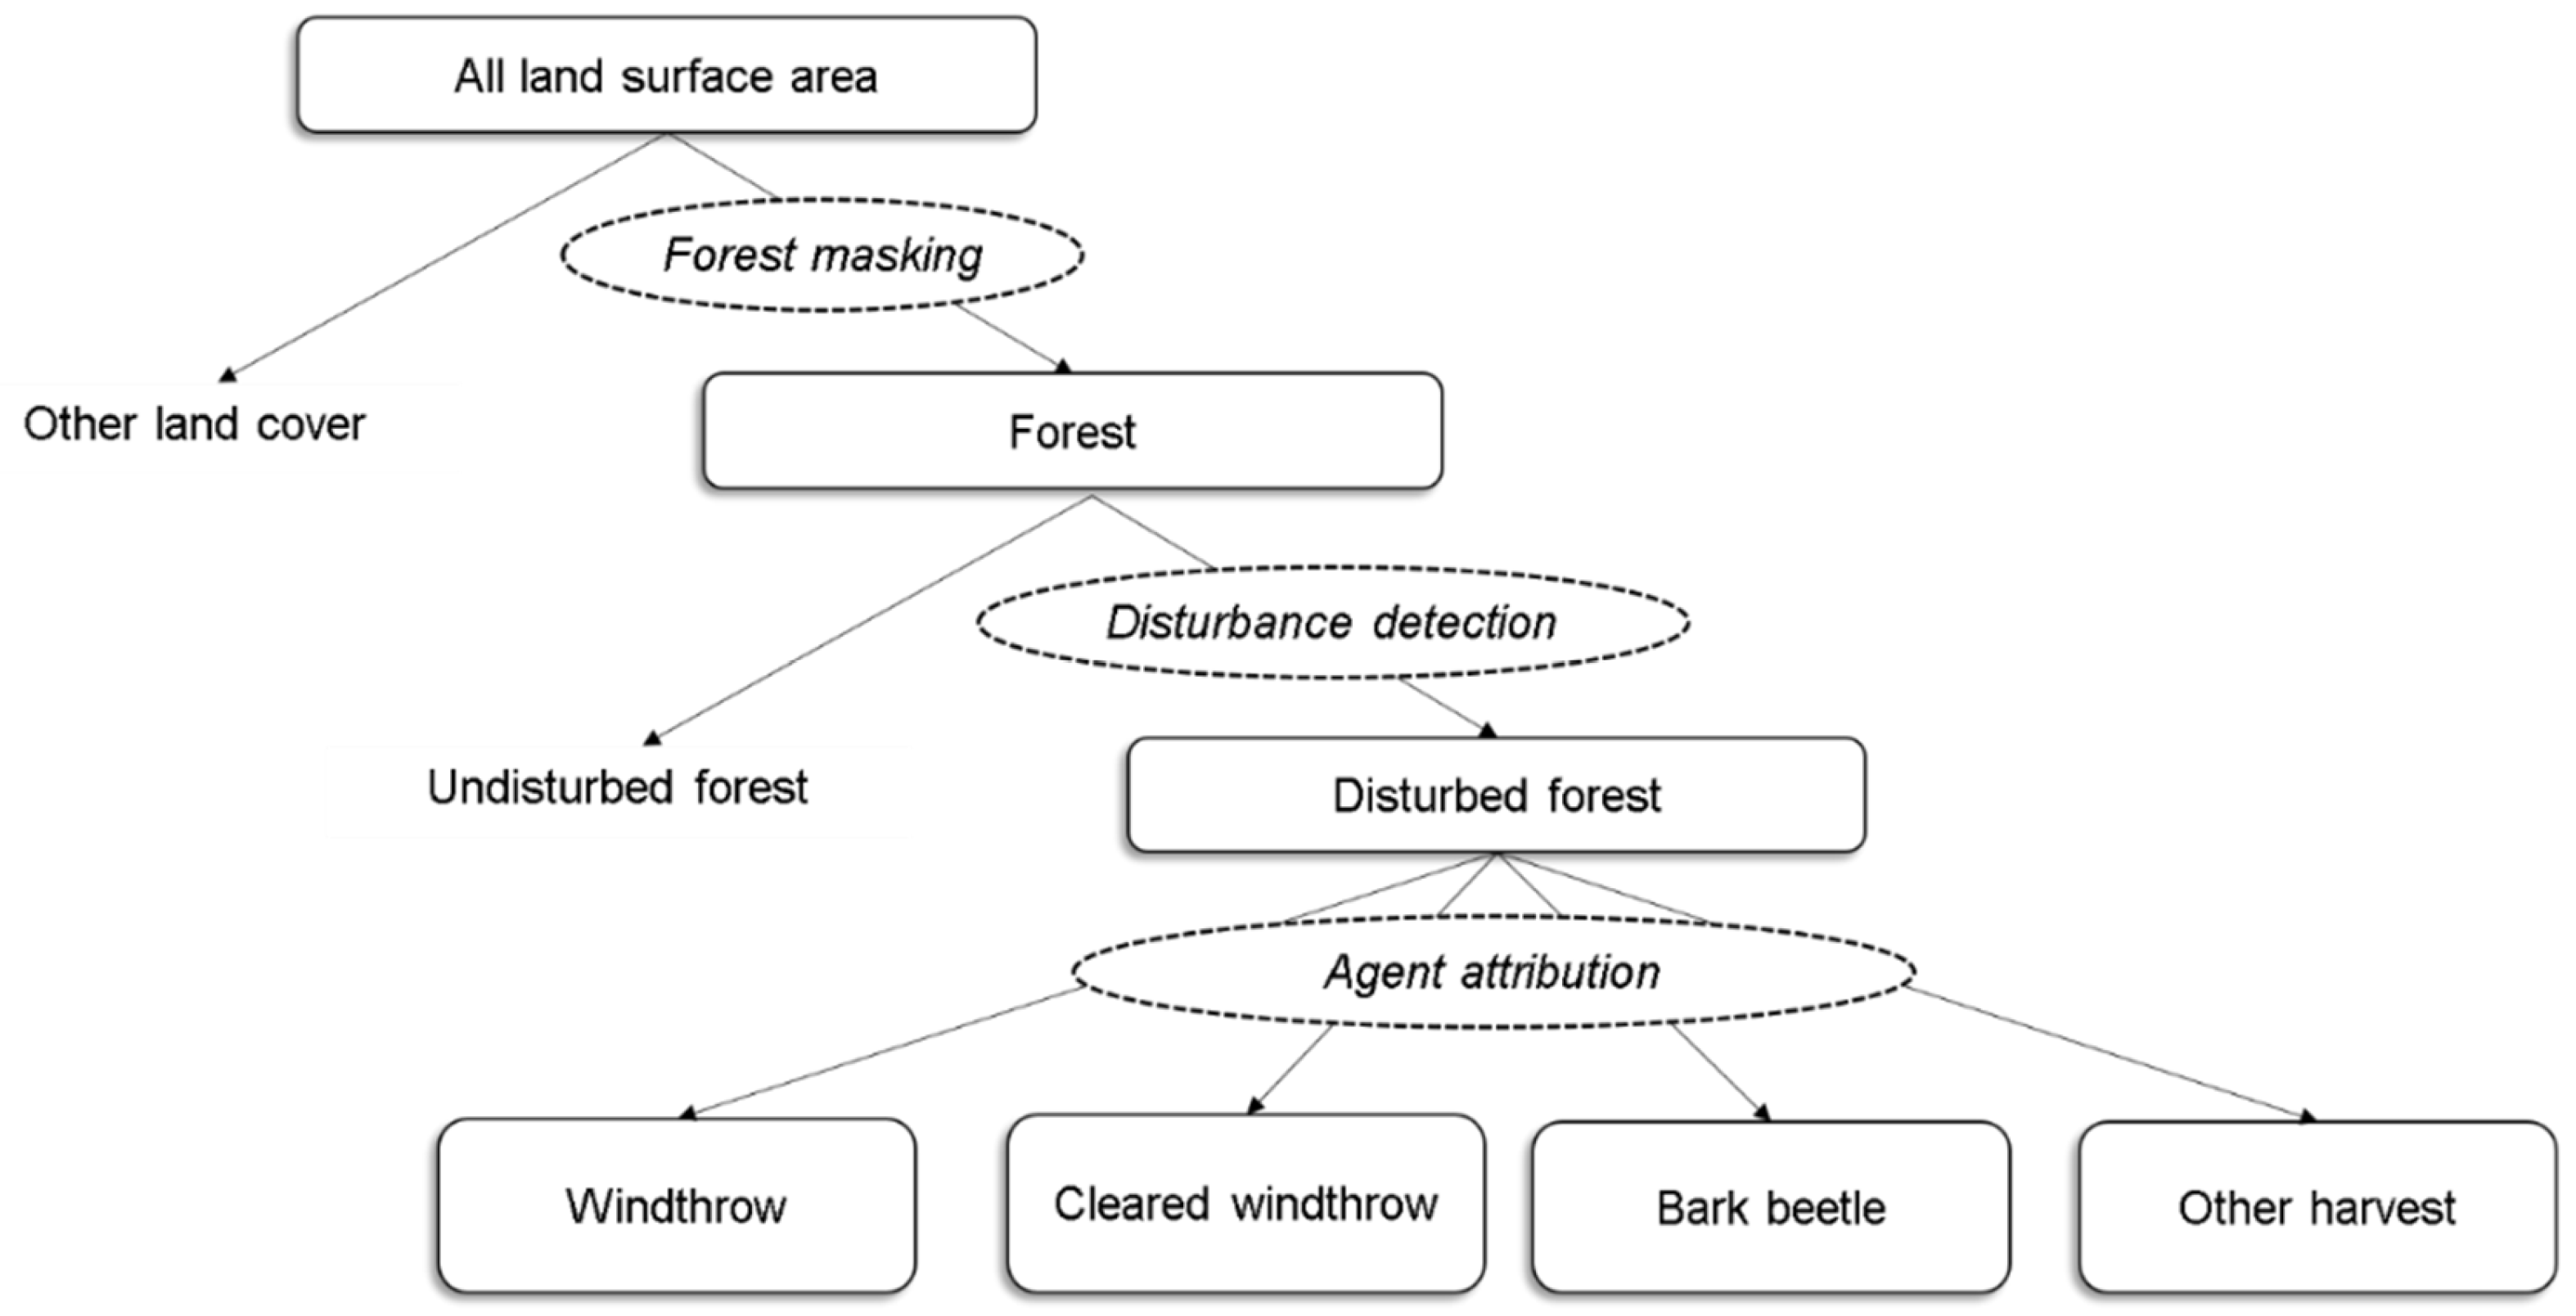 Forest disturbance detection